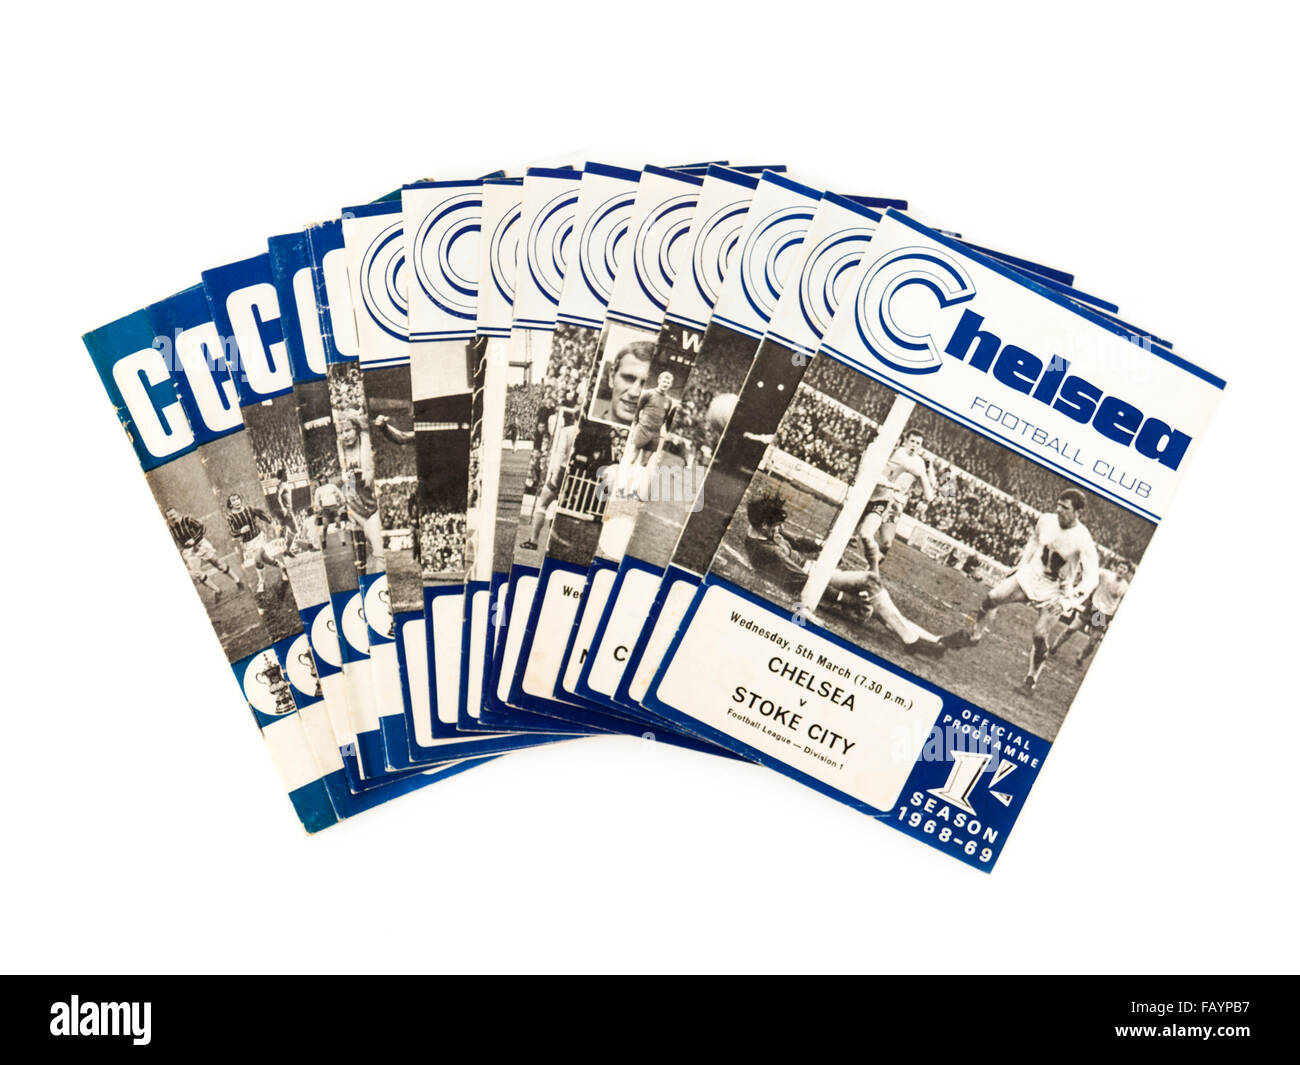 Collection de vintage des années 60, Chelsea Football Club Saison 1968-1969 (programmes) avec le Chelsea v Stoke City match sur le dessus. Banque D'Images